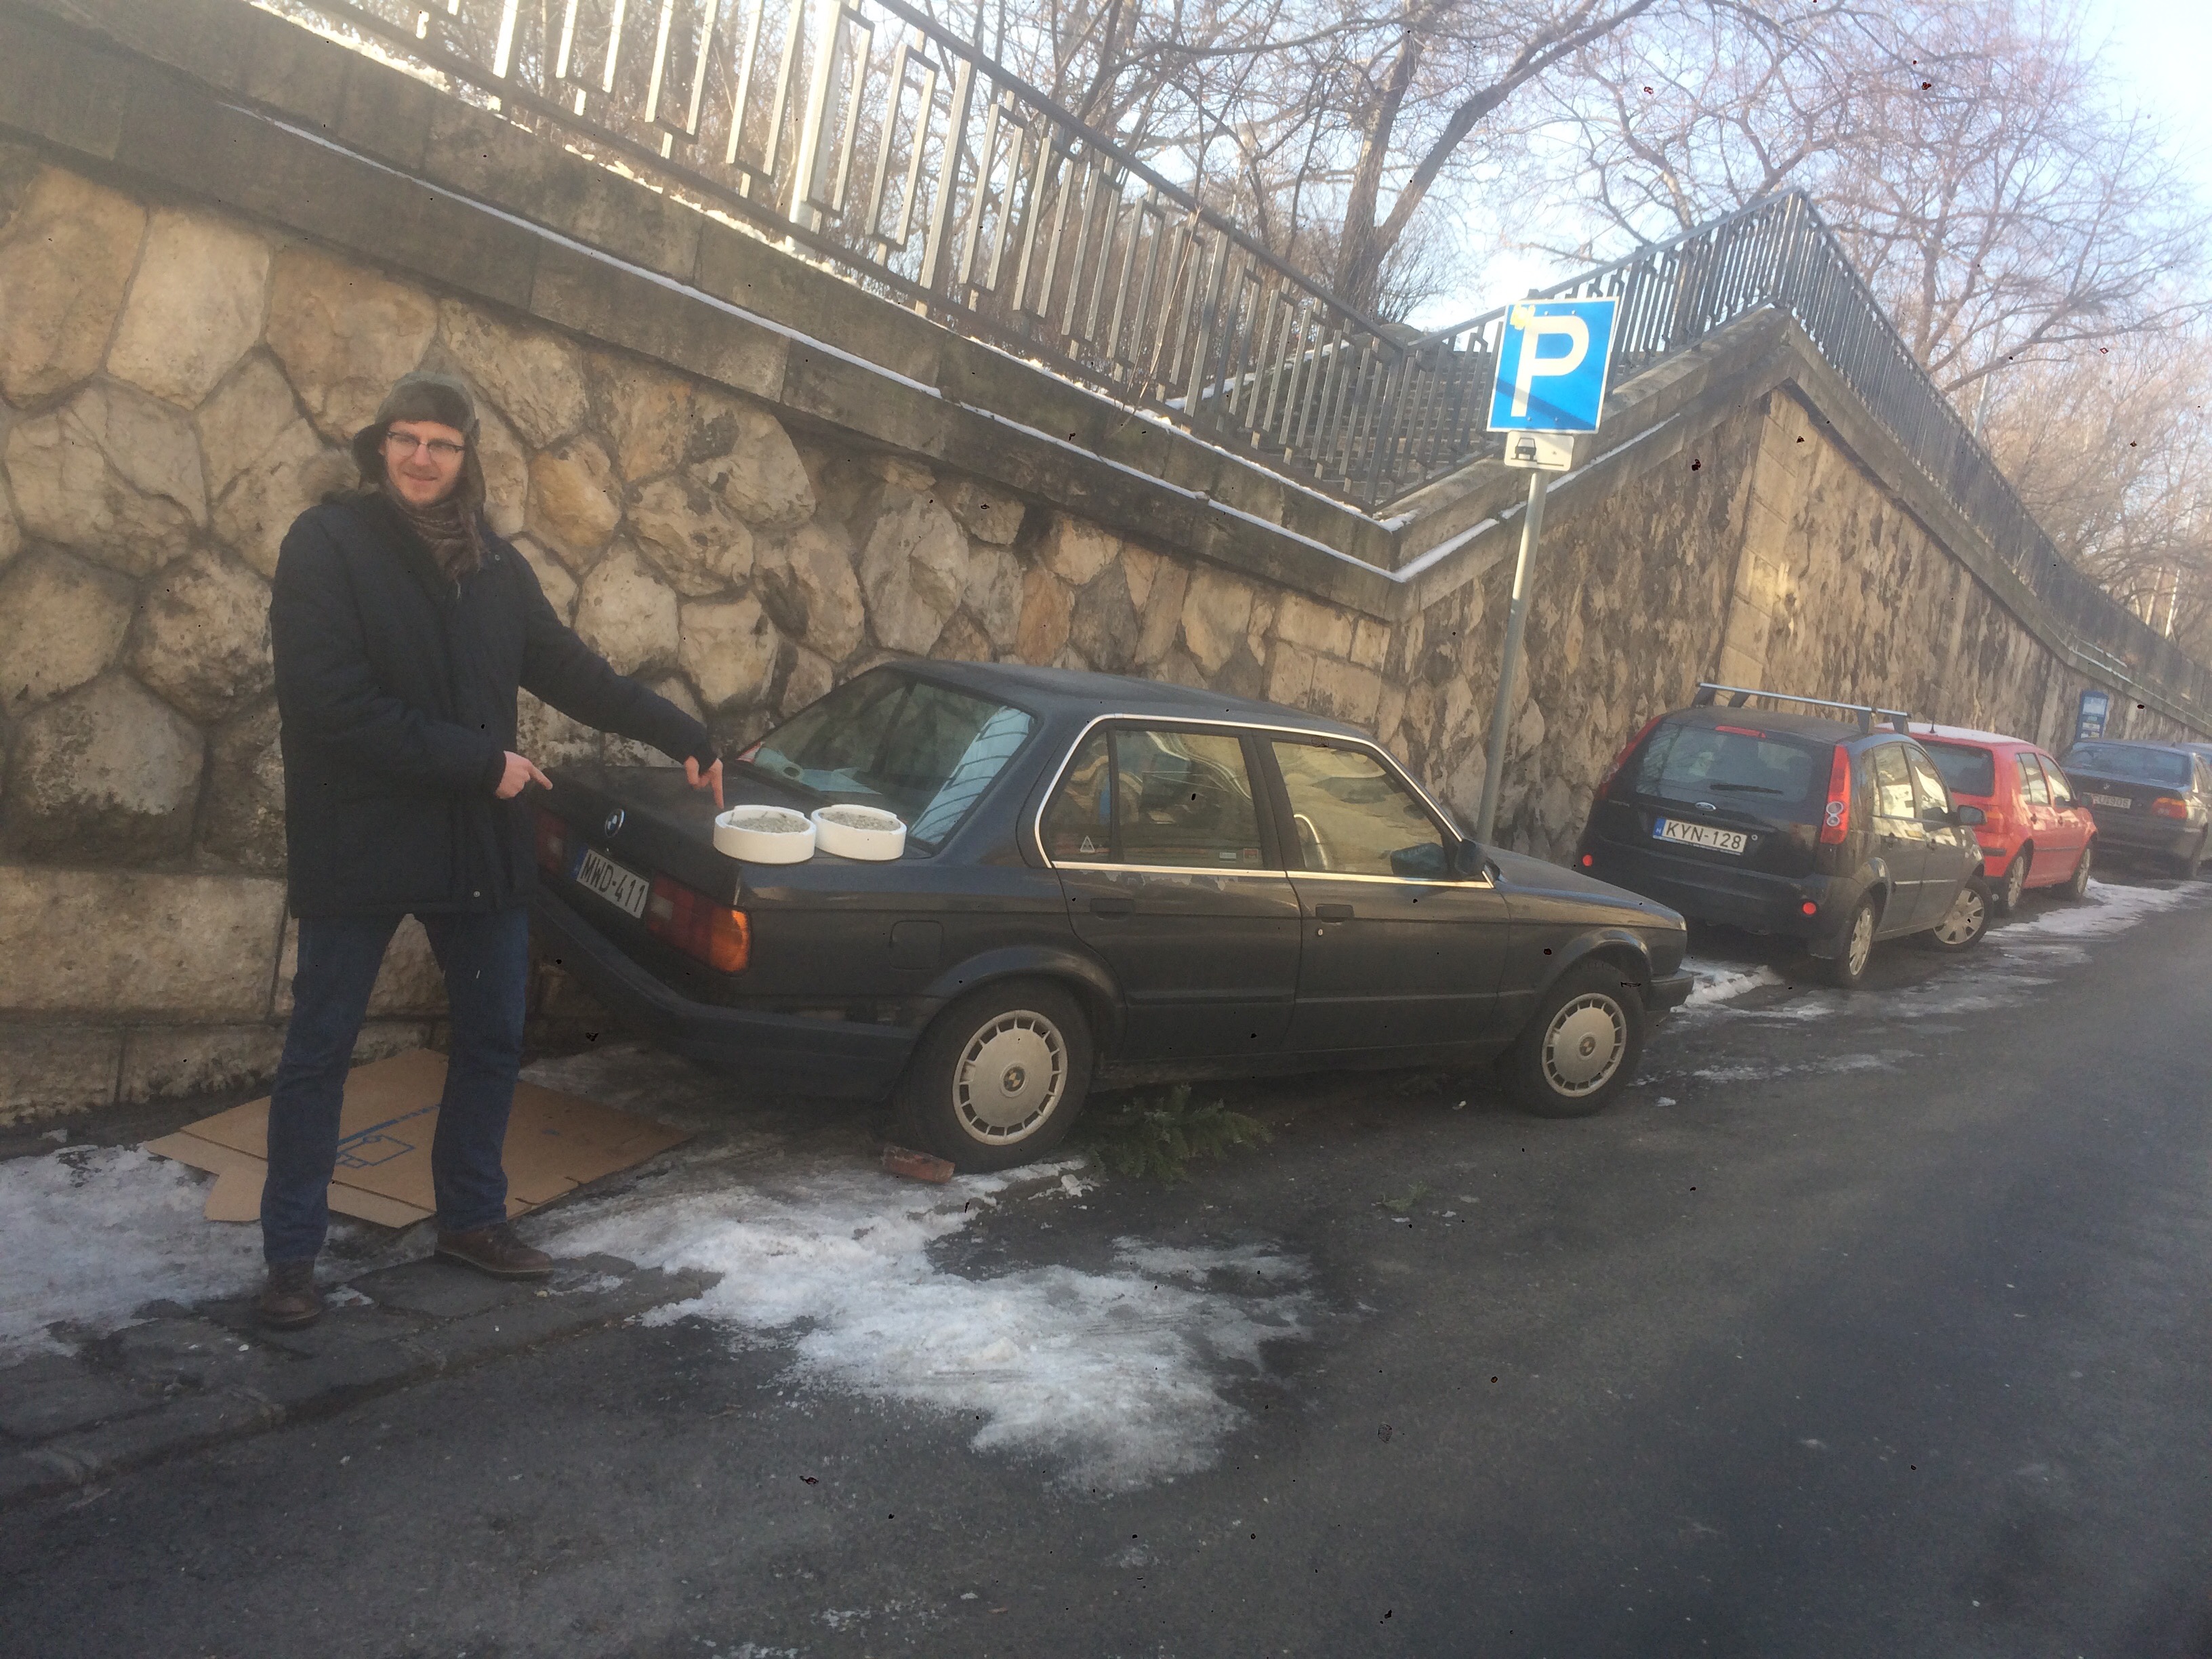 Óránként 465 forint a parkolás, de nem takarítják el a jeget. Ha emiatt lezúzod az autód? Oldd meg magad, üzeni az önkormányzat